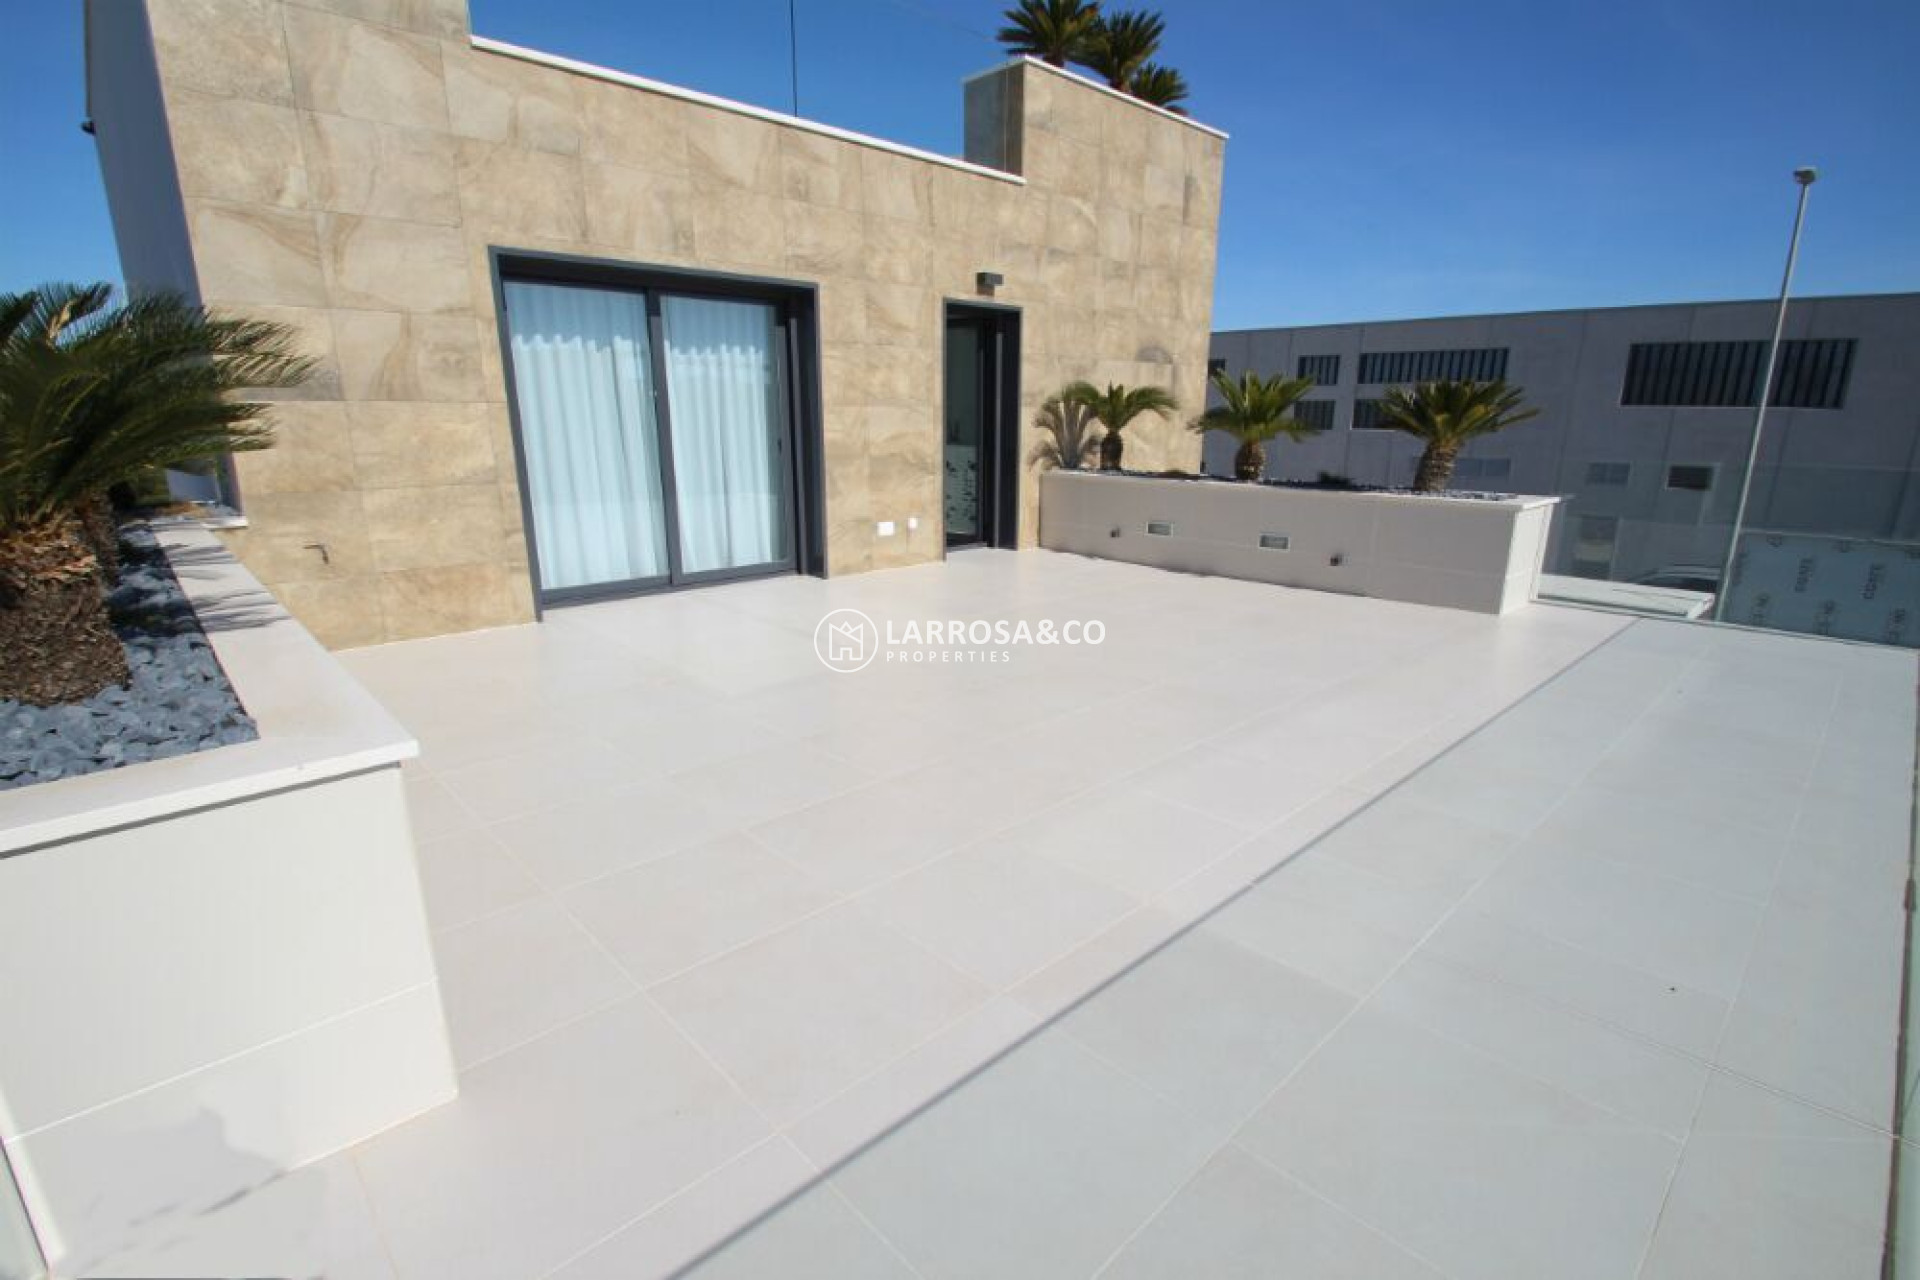 new-build-villa-sanmiguel-terrace-on2119